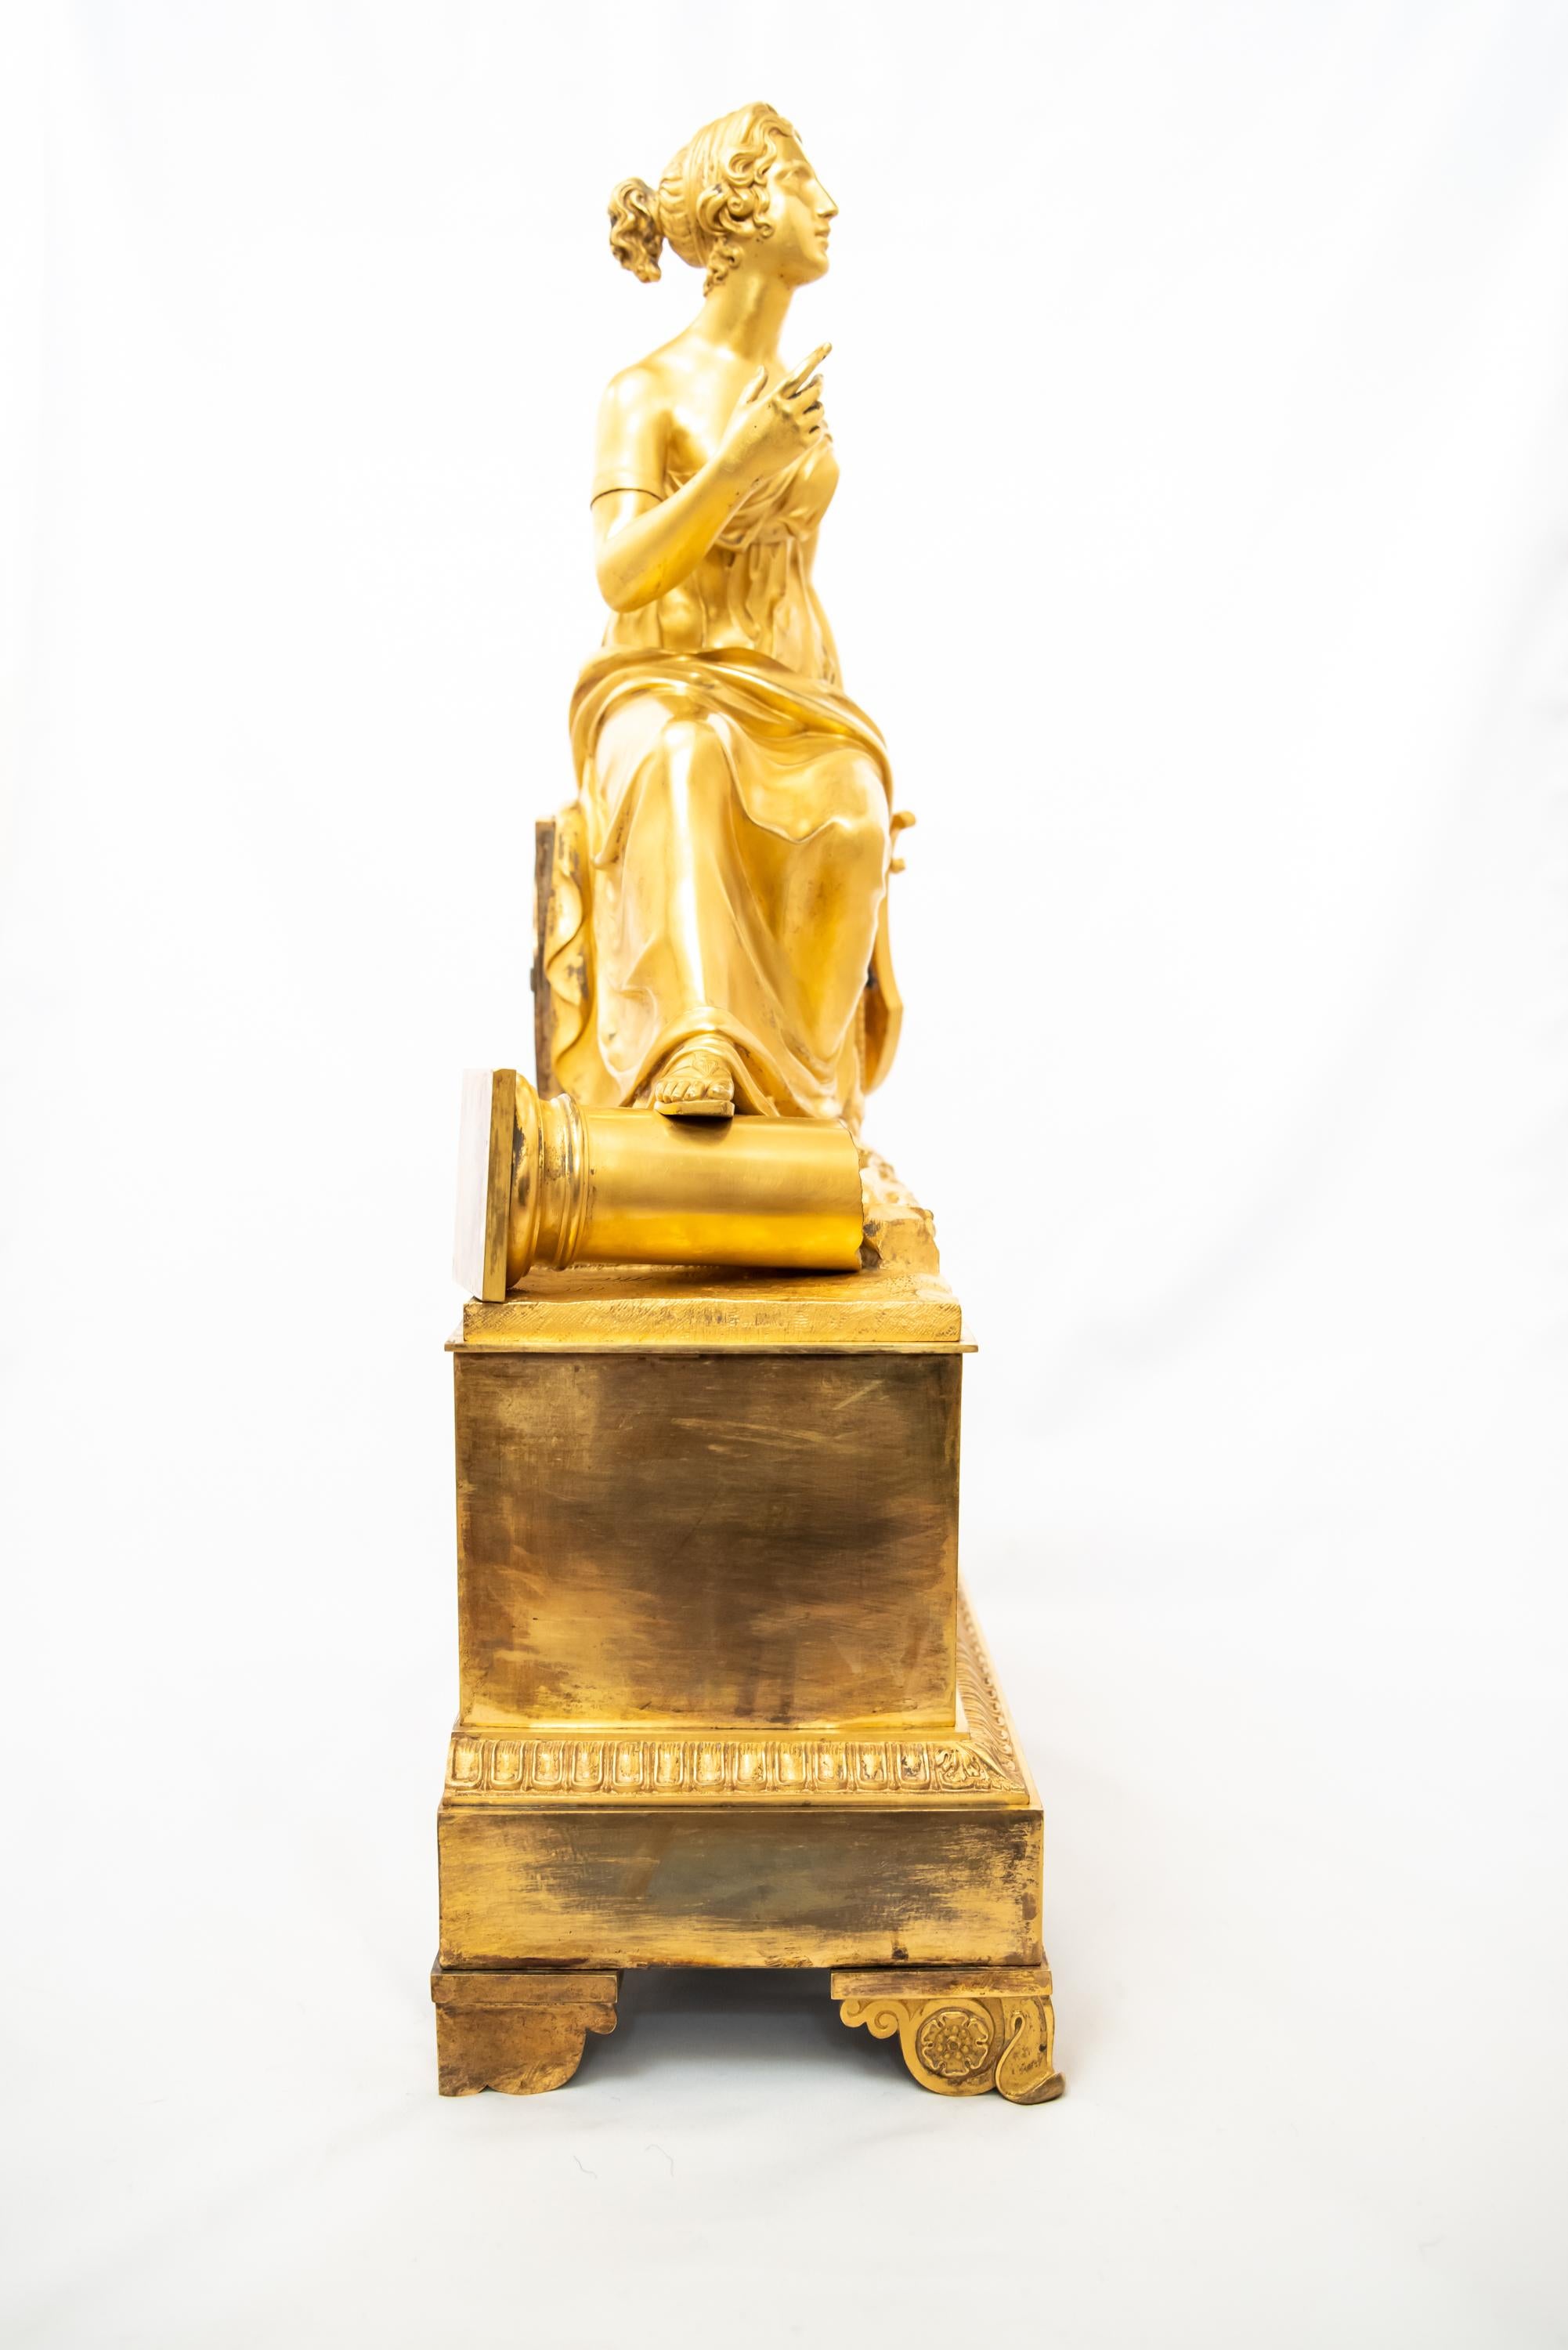 Eine prächtige feuervergoldete Bronzeuhr, die Madame de Staël in einer klassischen Landschaft sitzend mit einer Leier in der Hand darstellt, zu ihren Füßen das Fragment einer Säule. Aus der Epoche der französischen Restauration 1815-30. Das Bild von